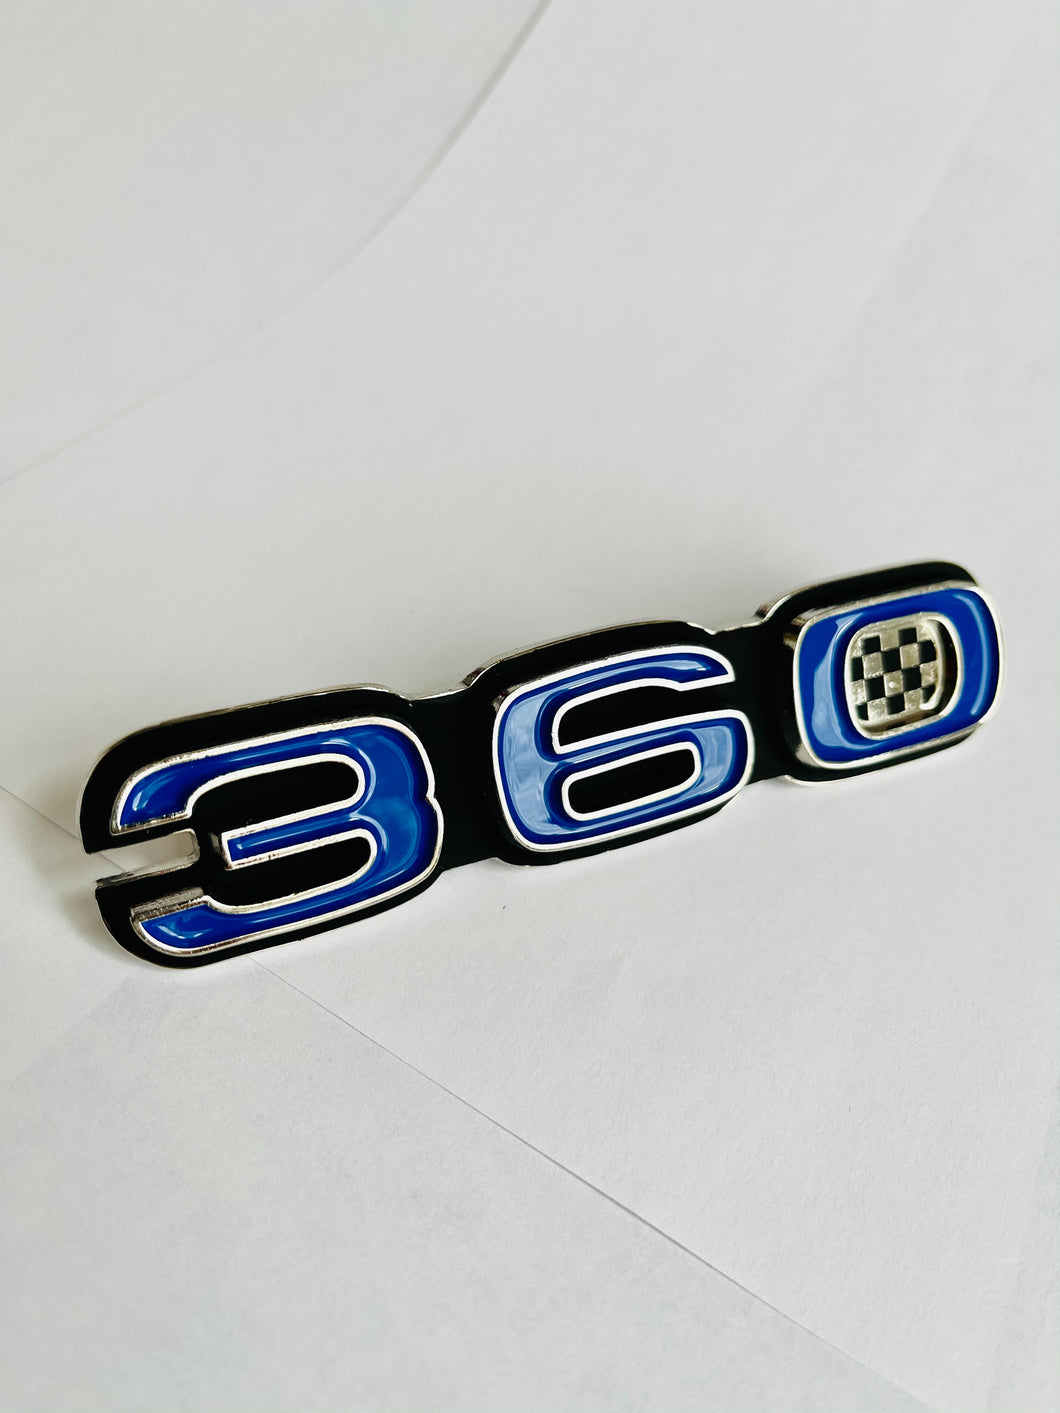 AMC 360 emblem